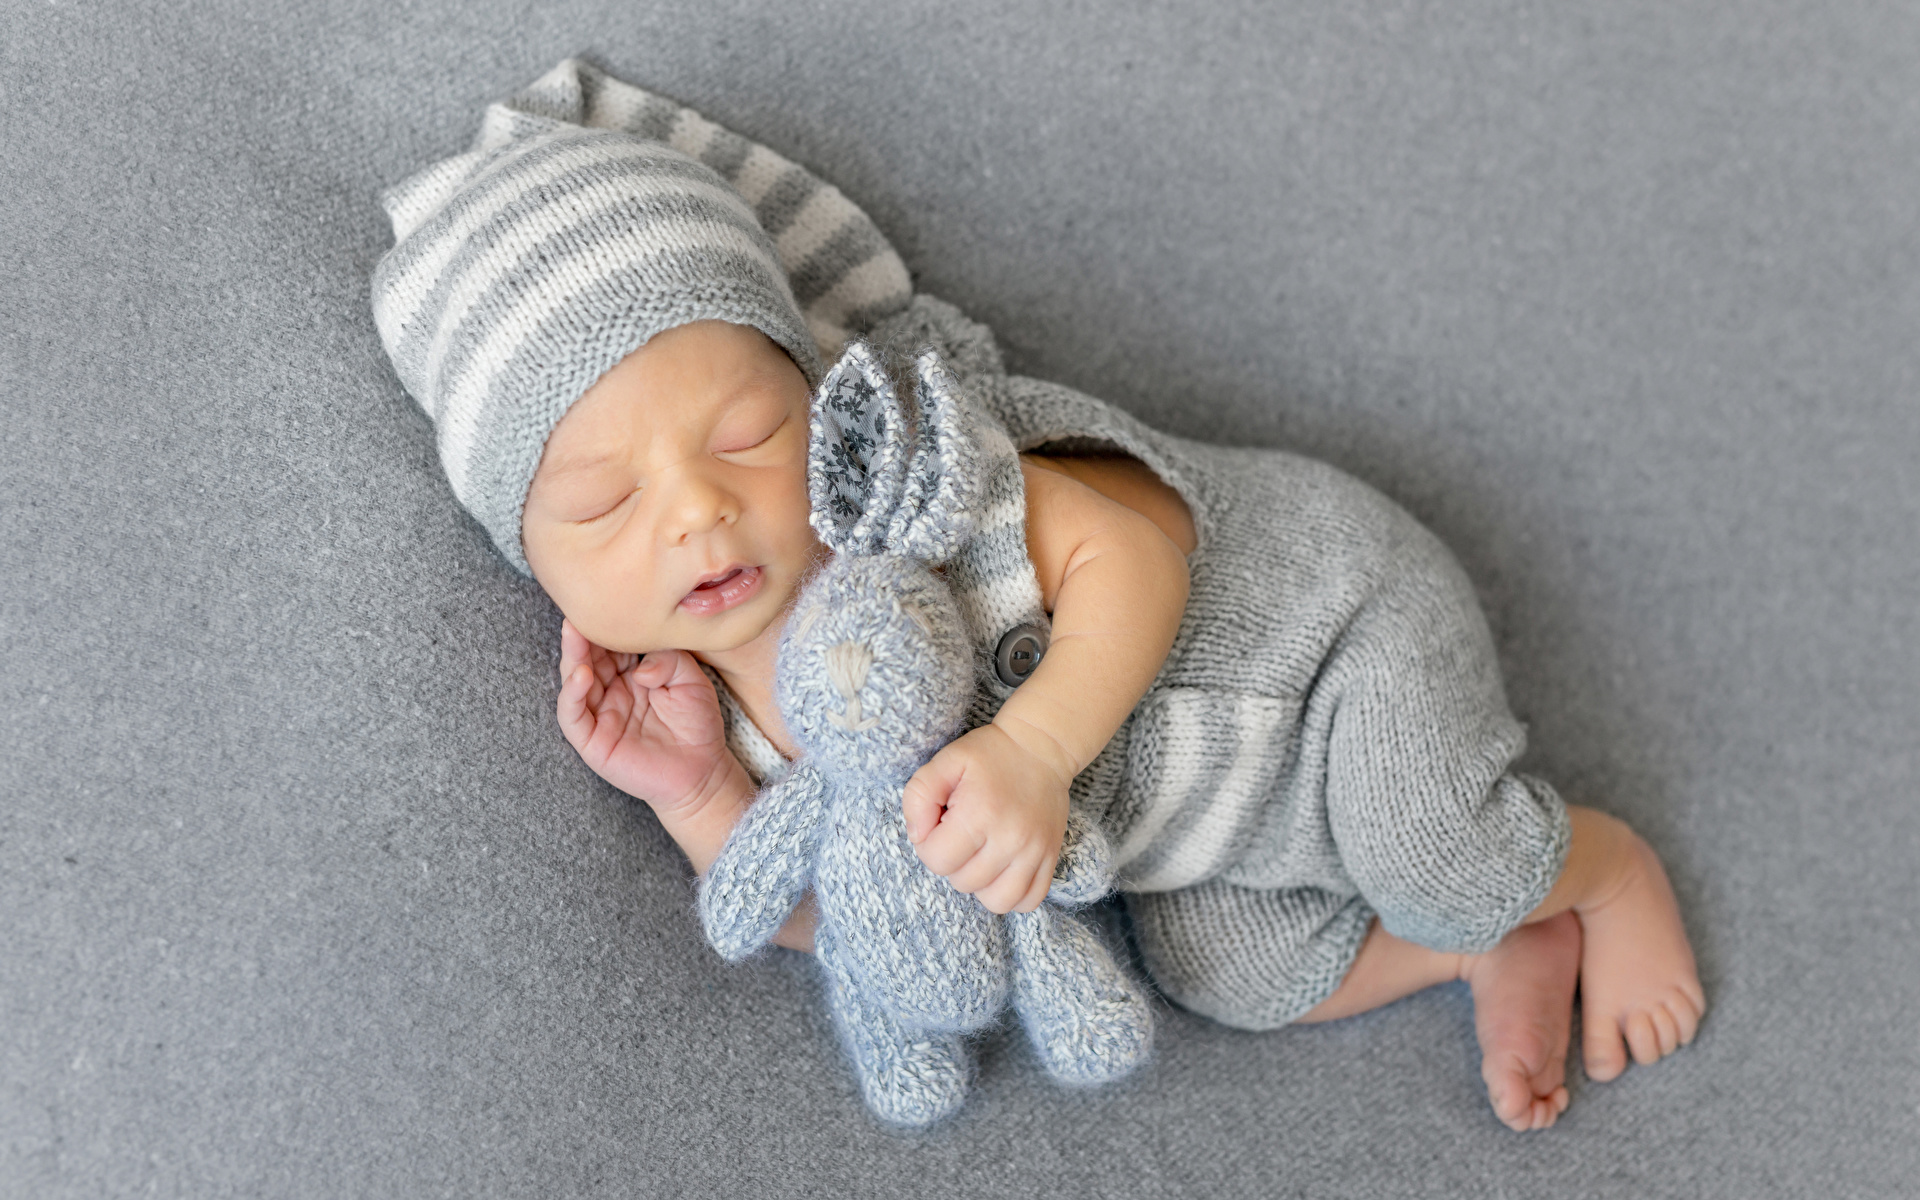 Фотография Зайцы Младенцы ребёнок Спит шапка игрушка 1920x1200 младенца младенец грудной ребёнок Дети сон спят Шапки спящий в шапке Игрушки